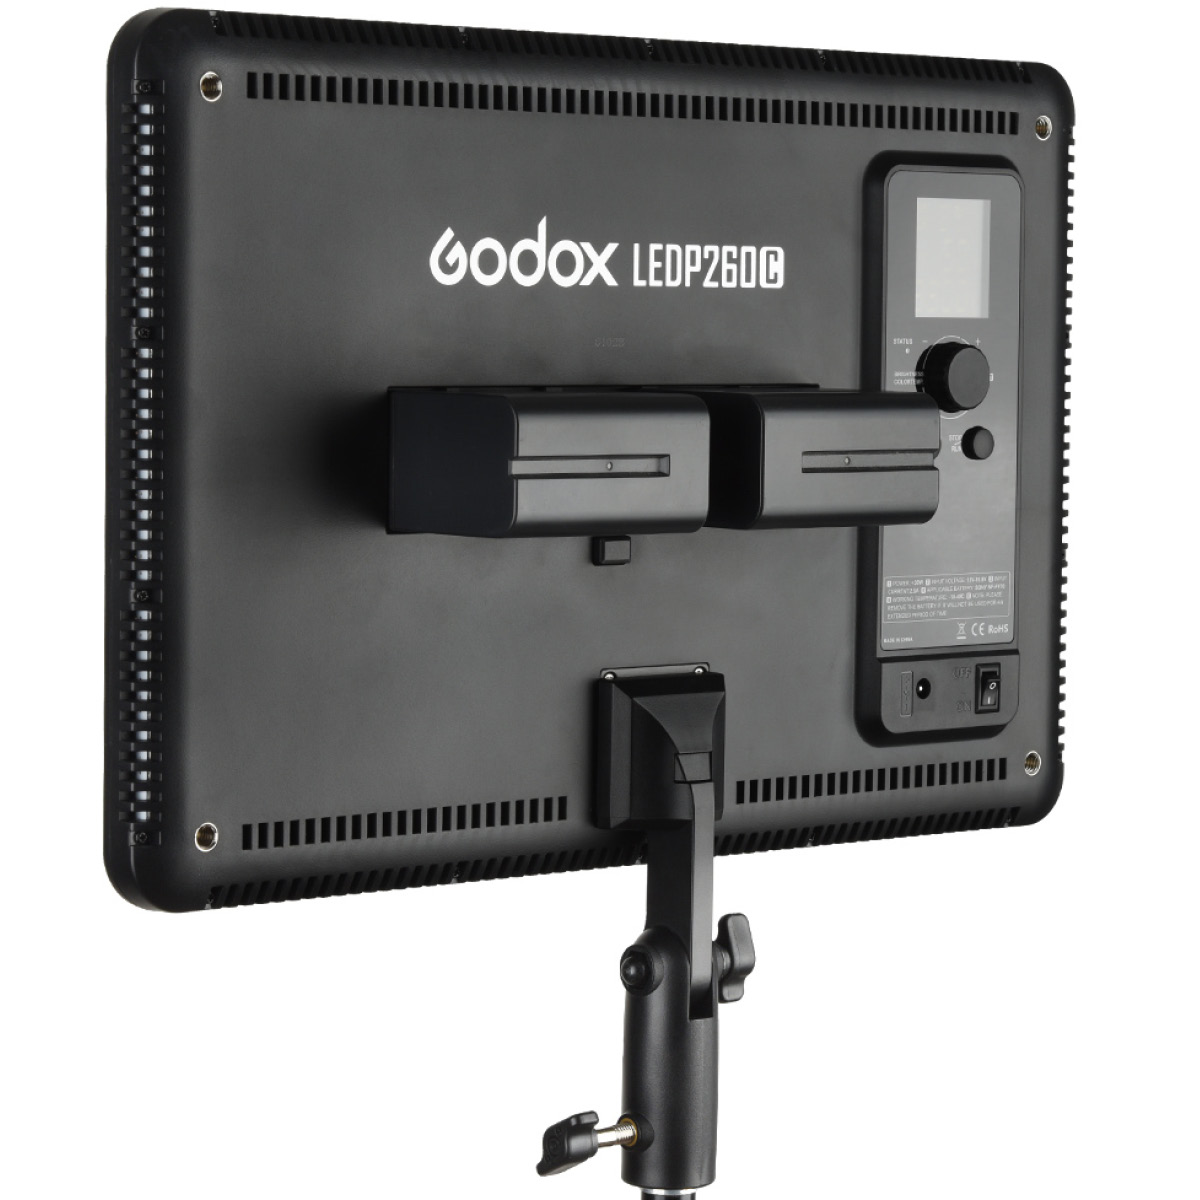 Godox LED P260 Flachleuchte